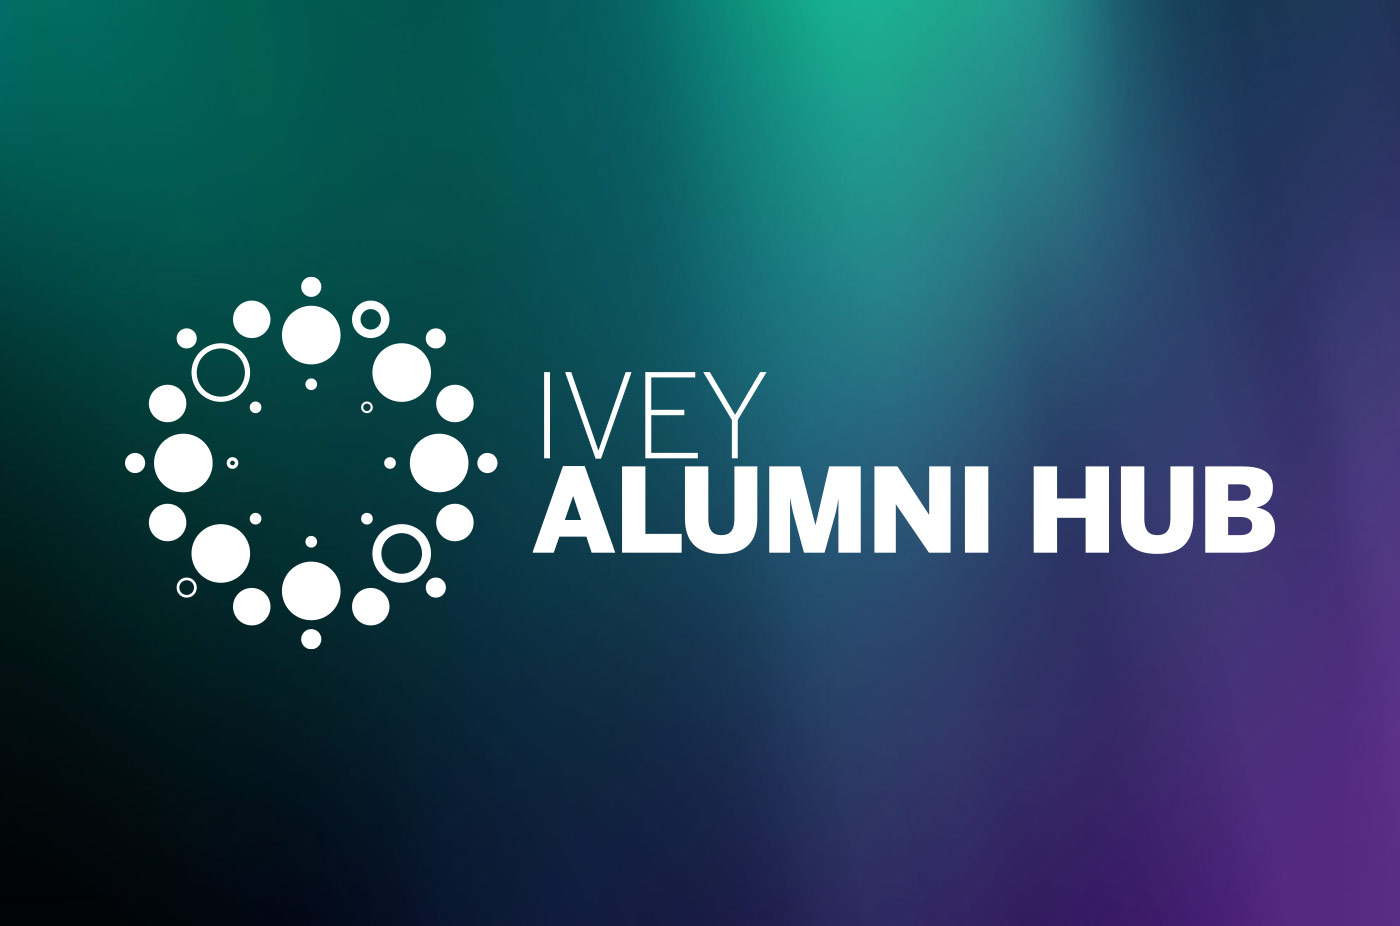 Alumni Hub